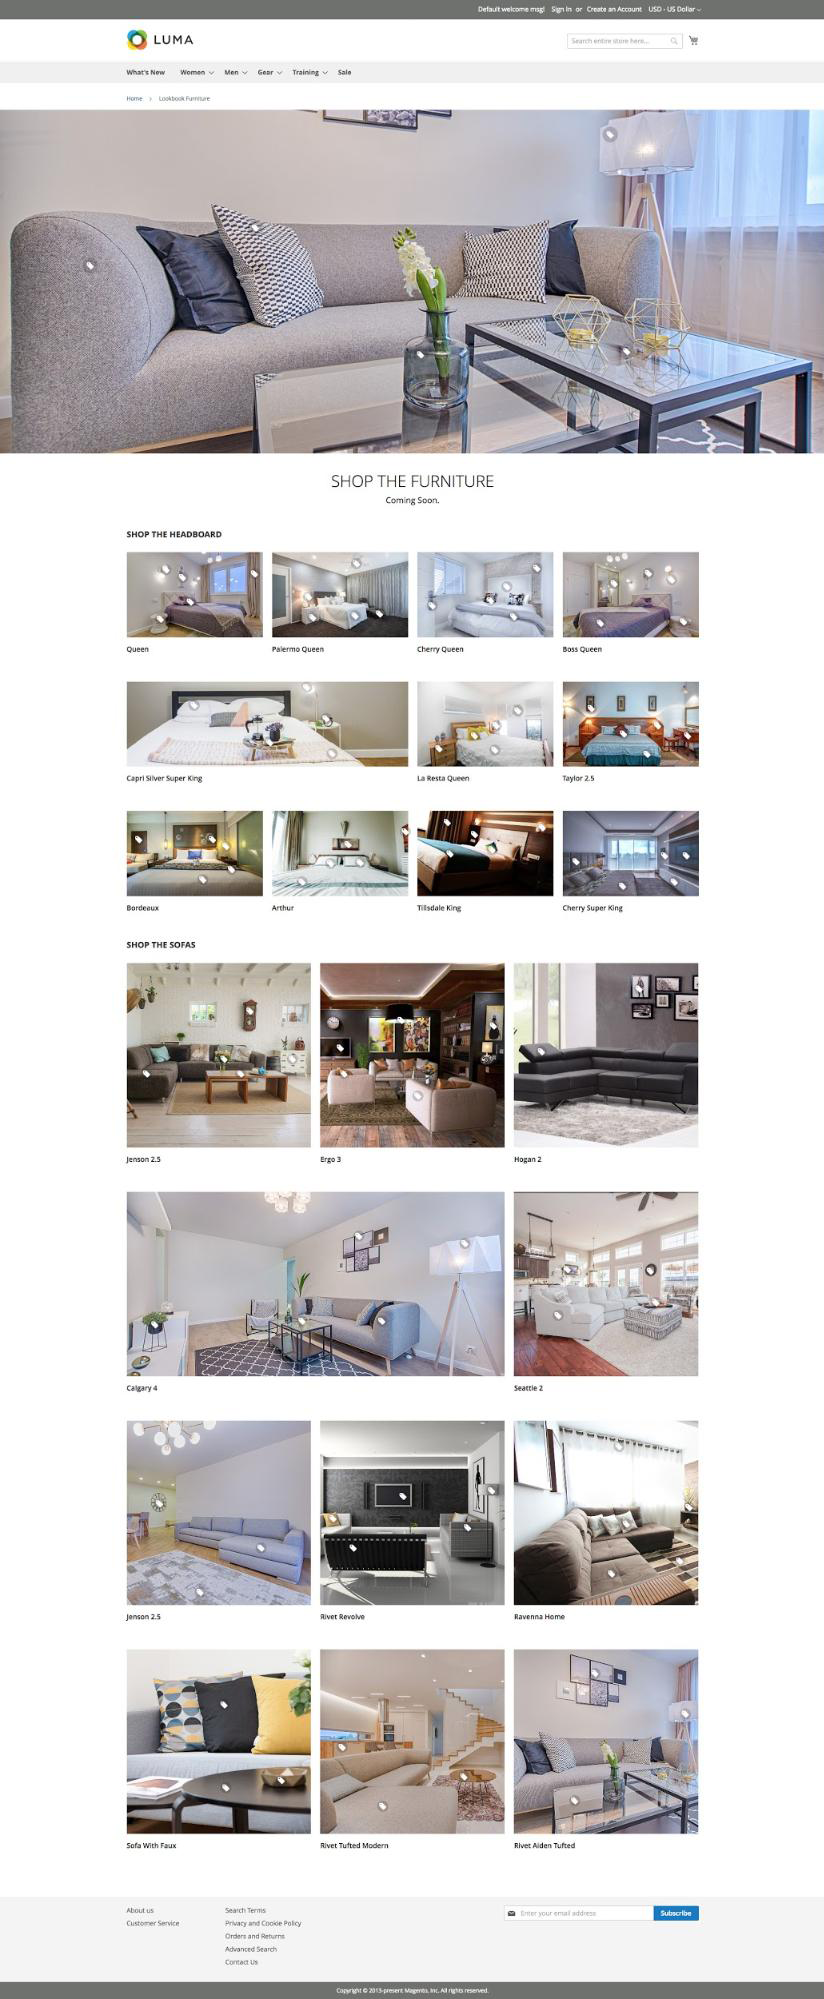 Sample furniture lookbook page